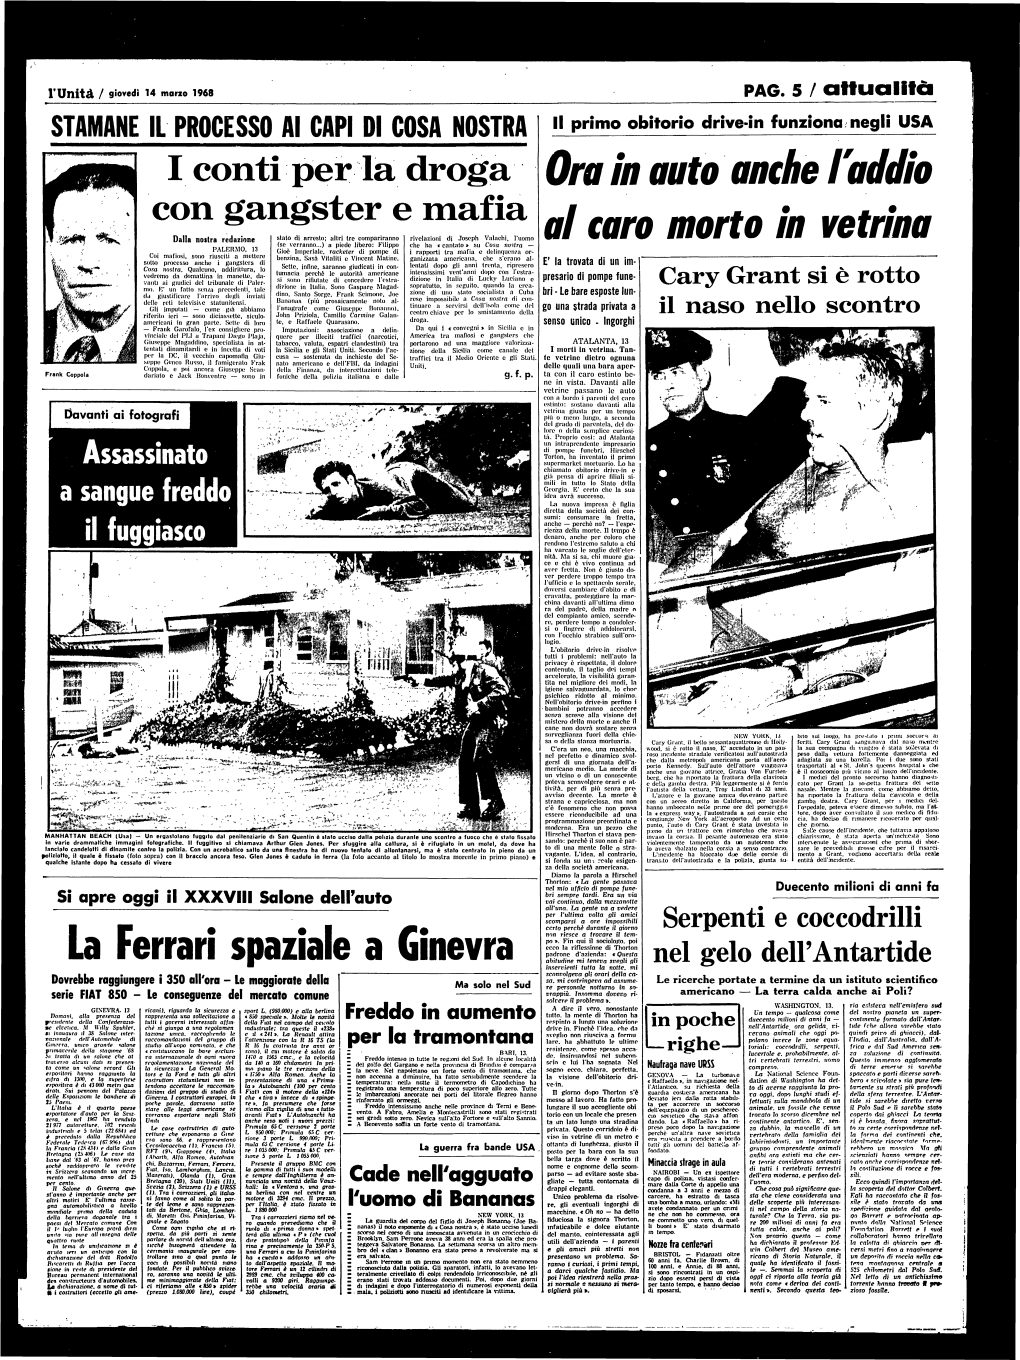 I Conti Per La Droga Con Gangster E Mafia La Ferrari Spaziale a Ginevra